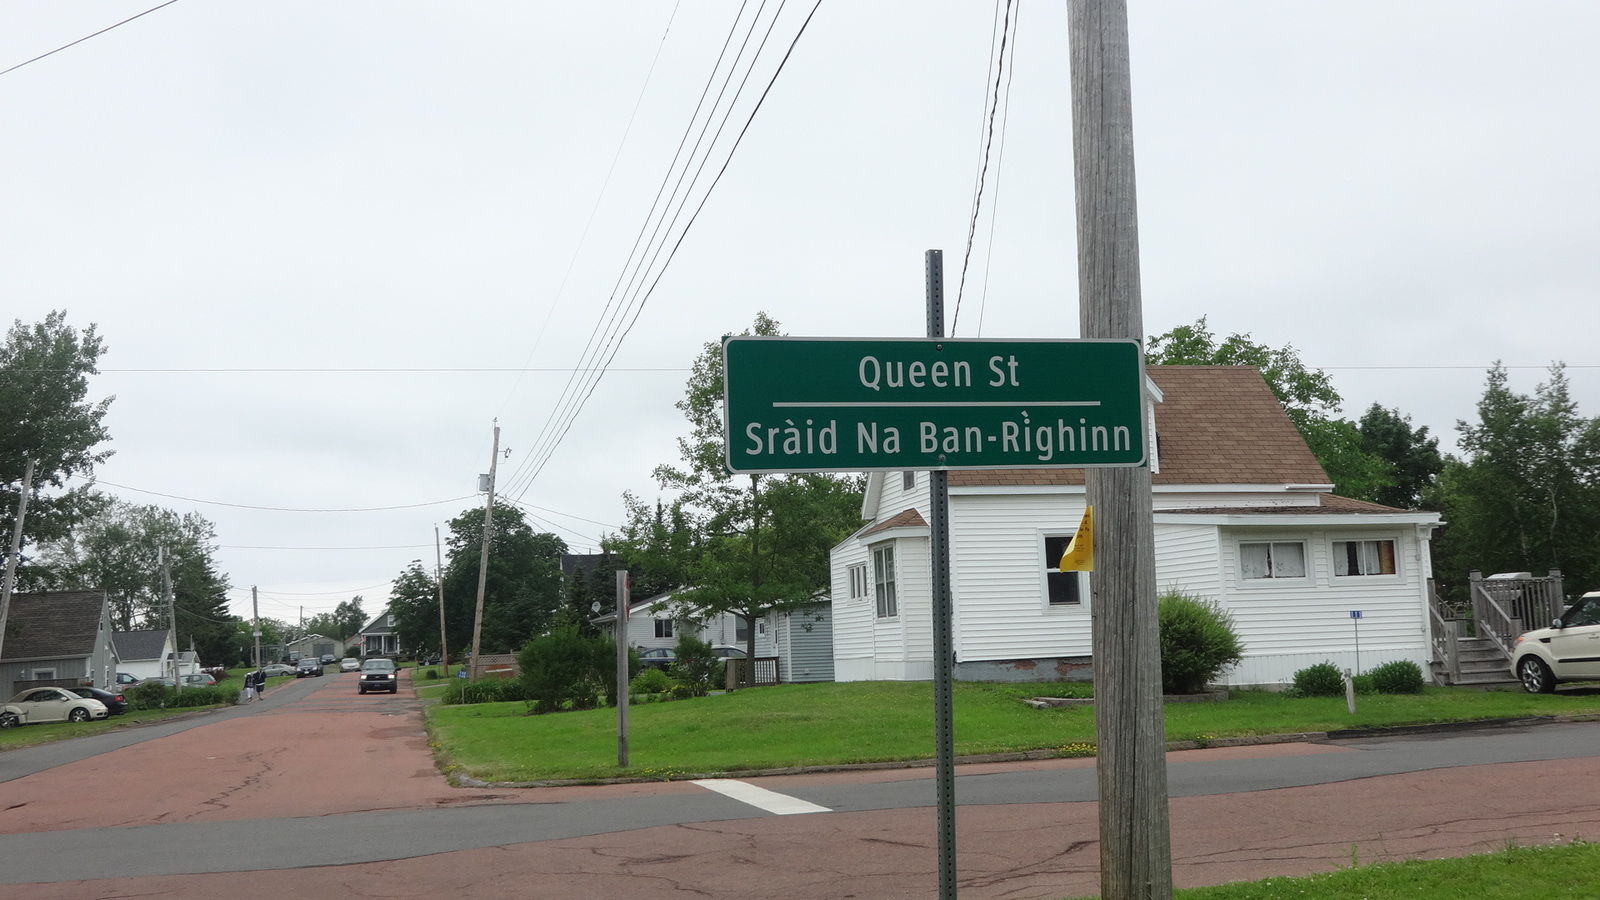 Tous les noms de rue sont traduits en gaélique